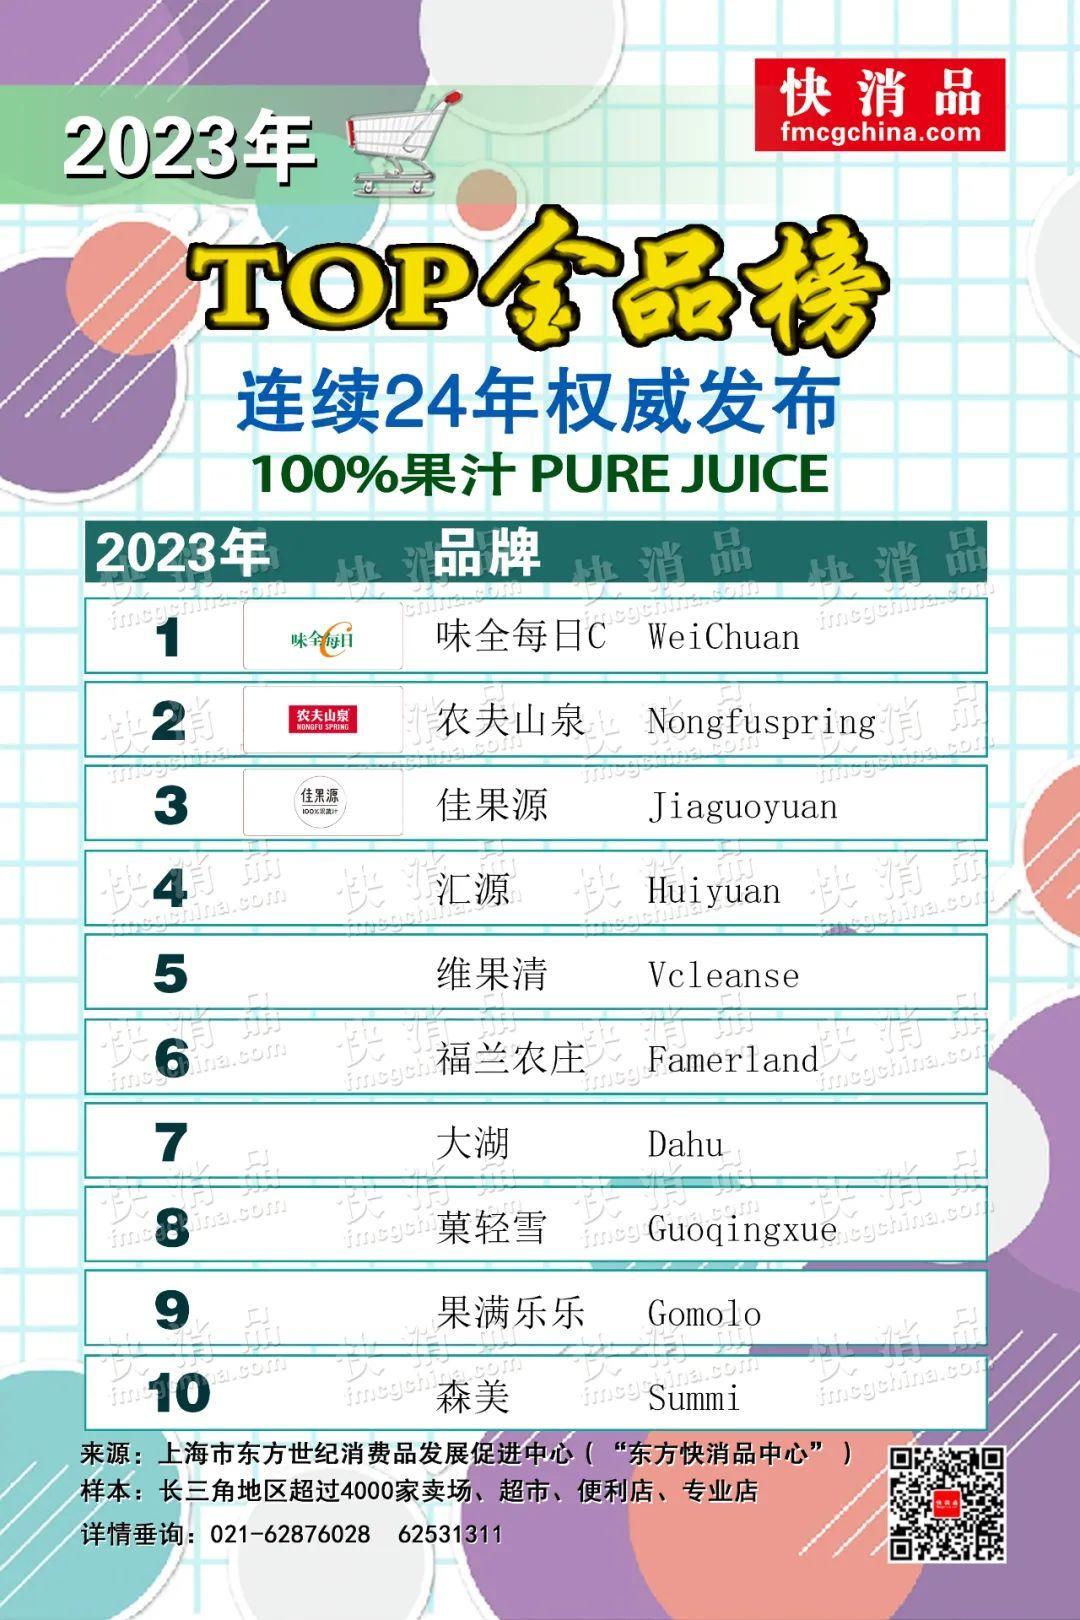 【独家】“2023年线下TOP金品榜——饮品品类（十三）”发布